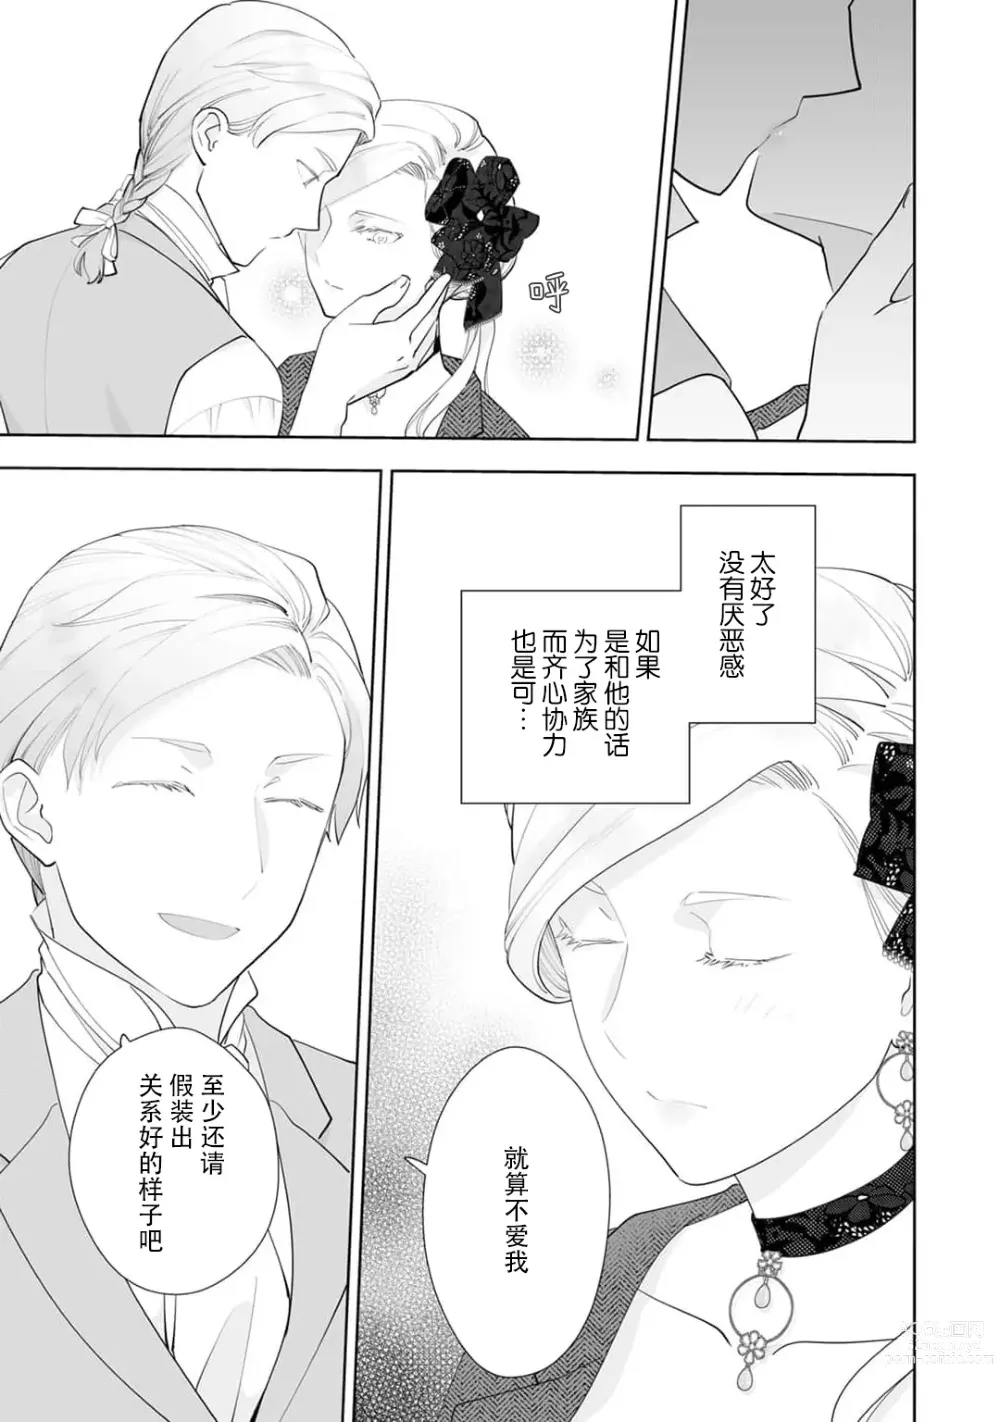 Page 19 of manga 被解除婚约的恶役千金，被帅哥资产家求婚了。 1-4